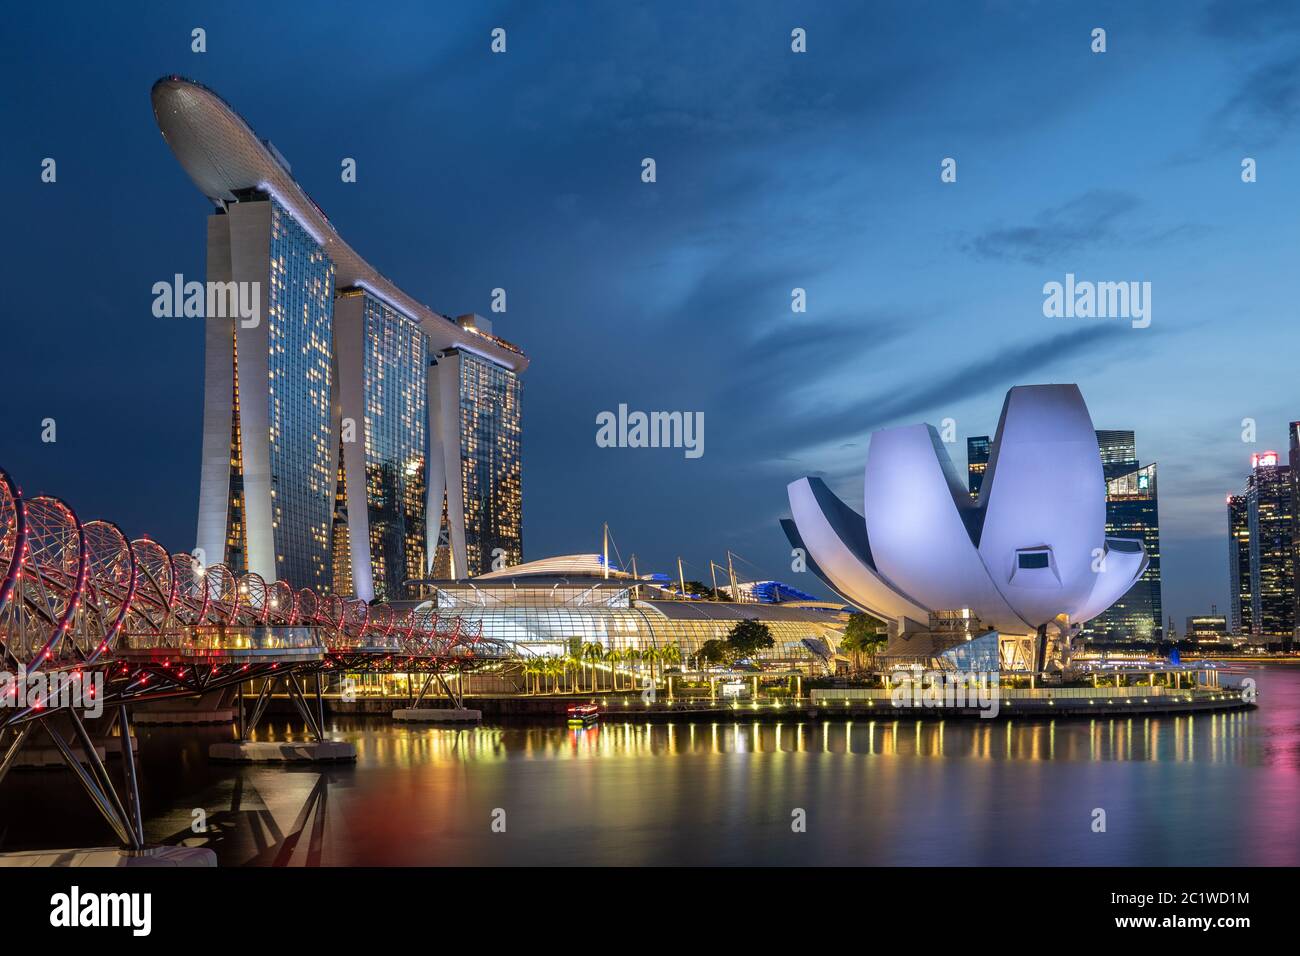 Photos de la Marina Bay à Singapour sous le soleil et de nuit Banque D'Images